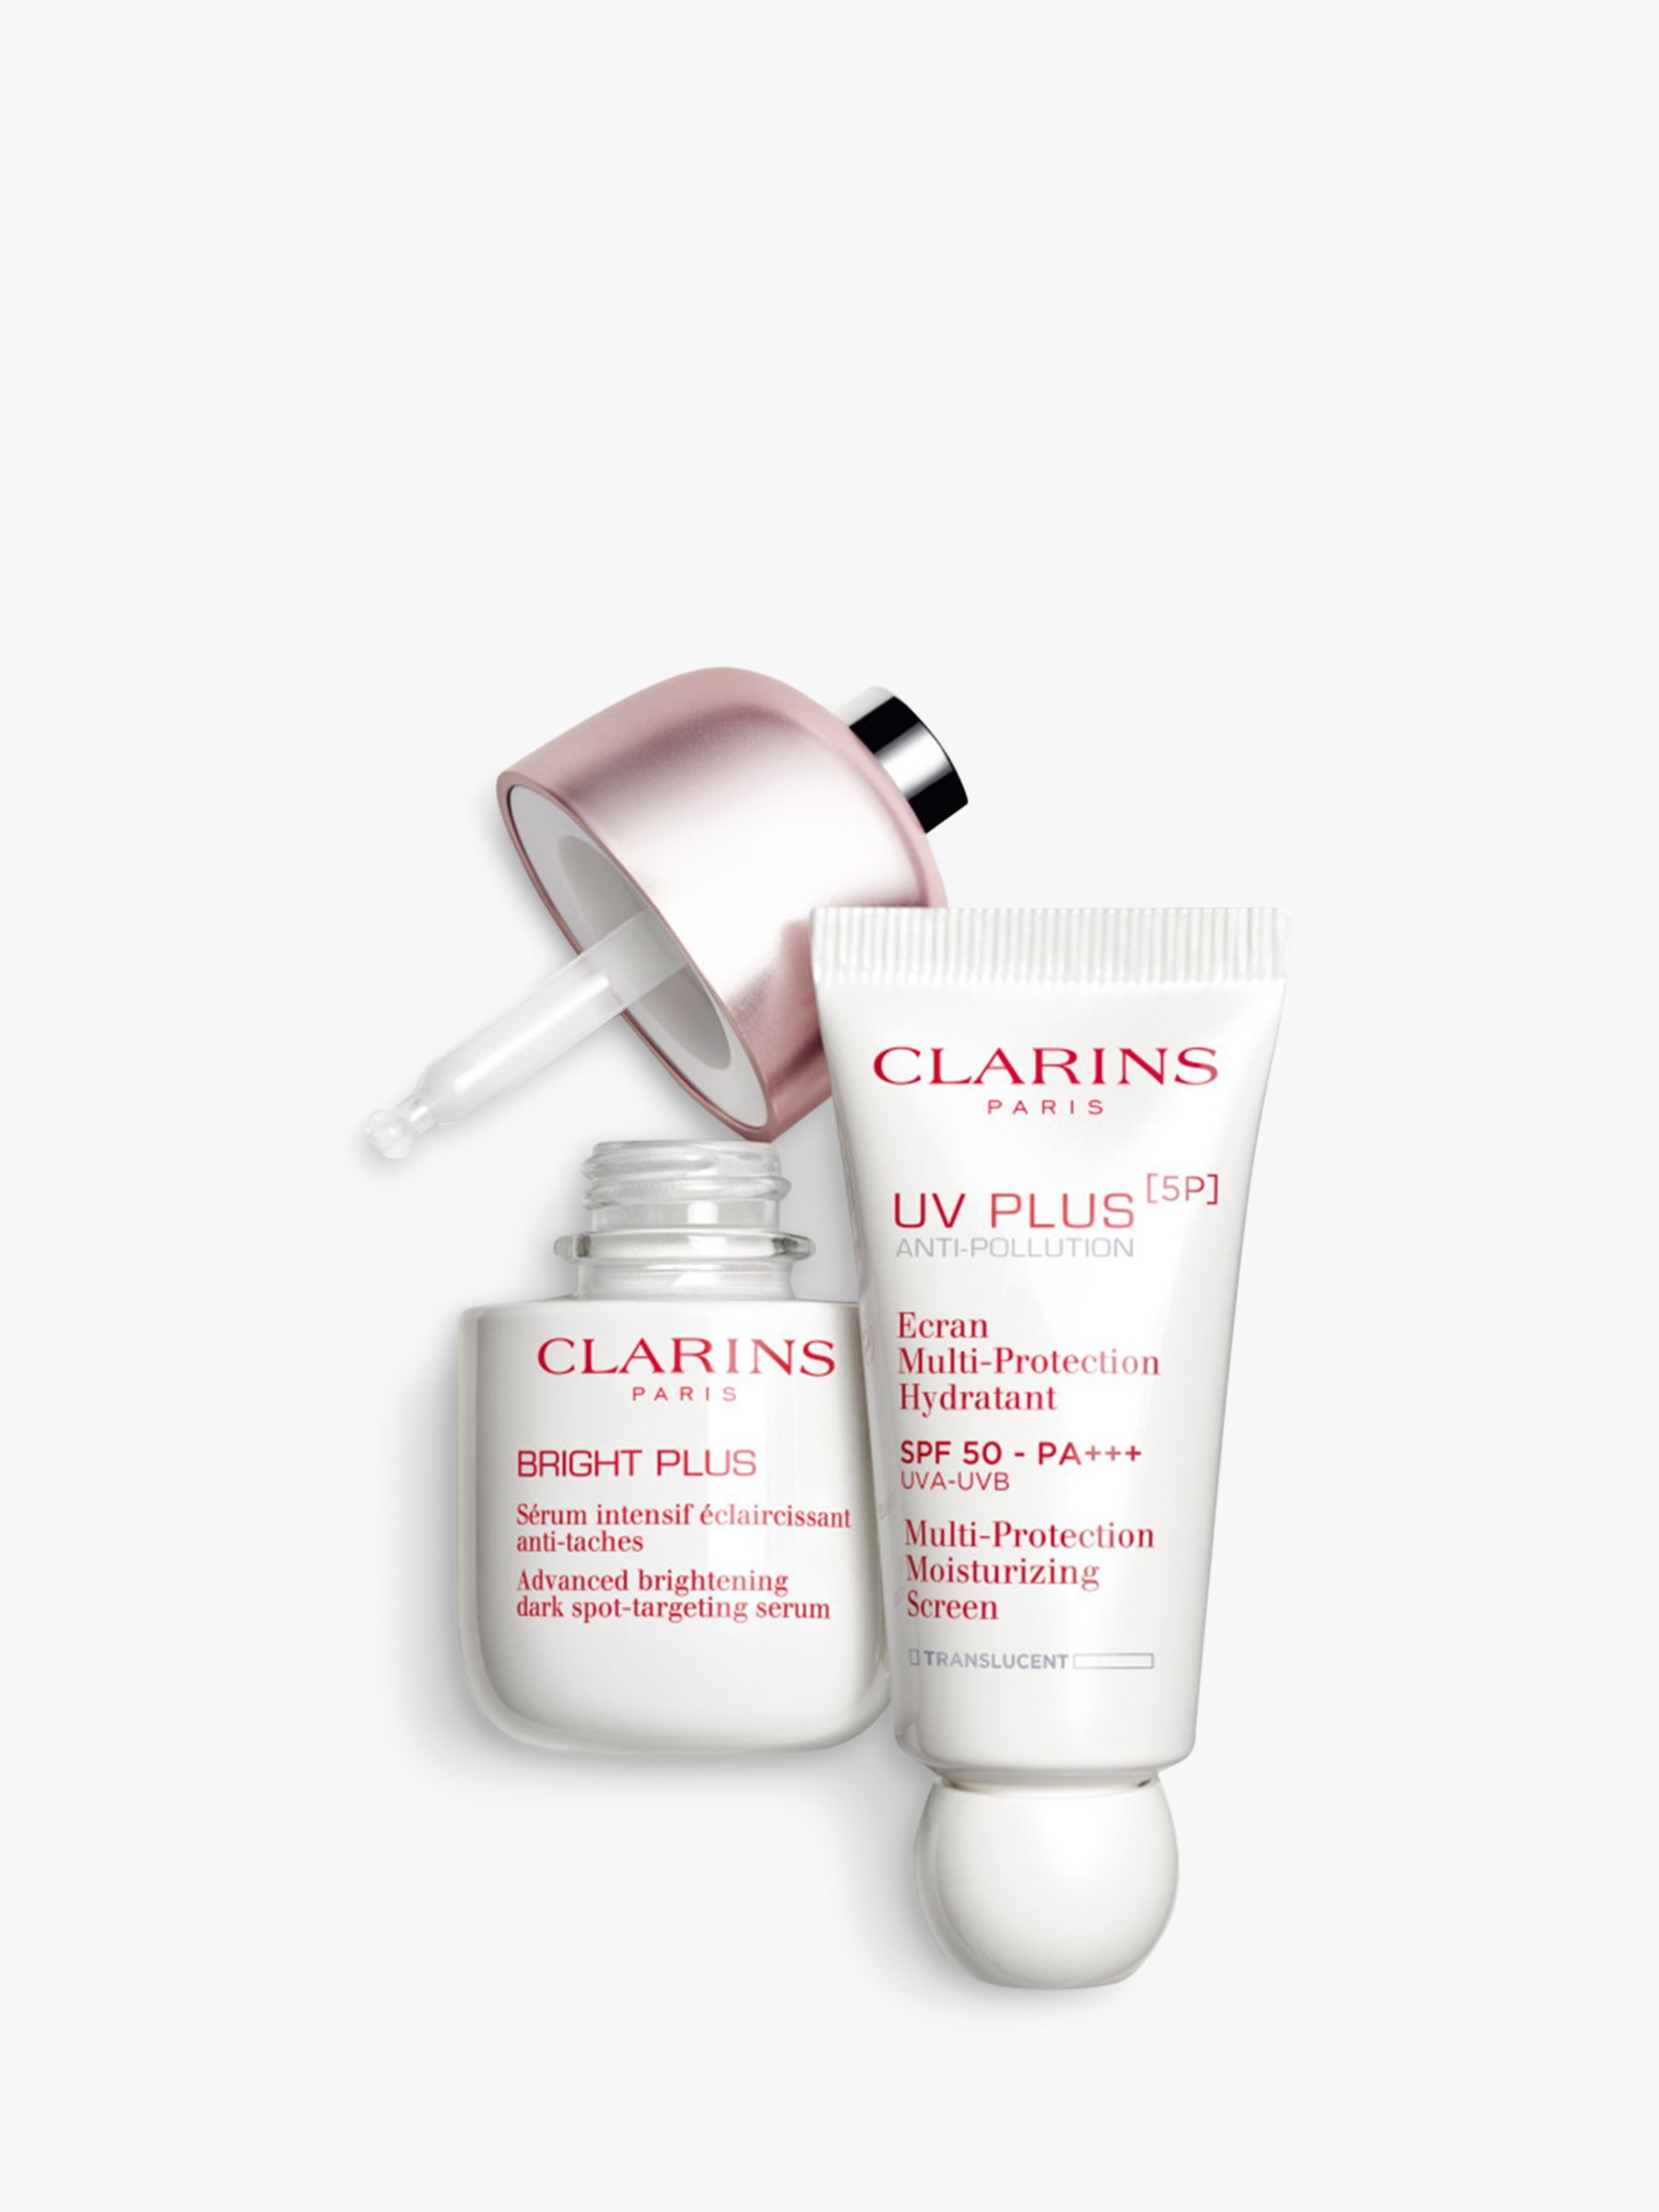 Clarins UV Plus Anti-Pollution SPF 50, Translucent 5